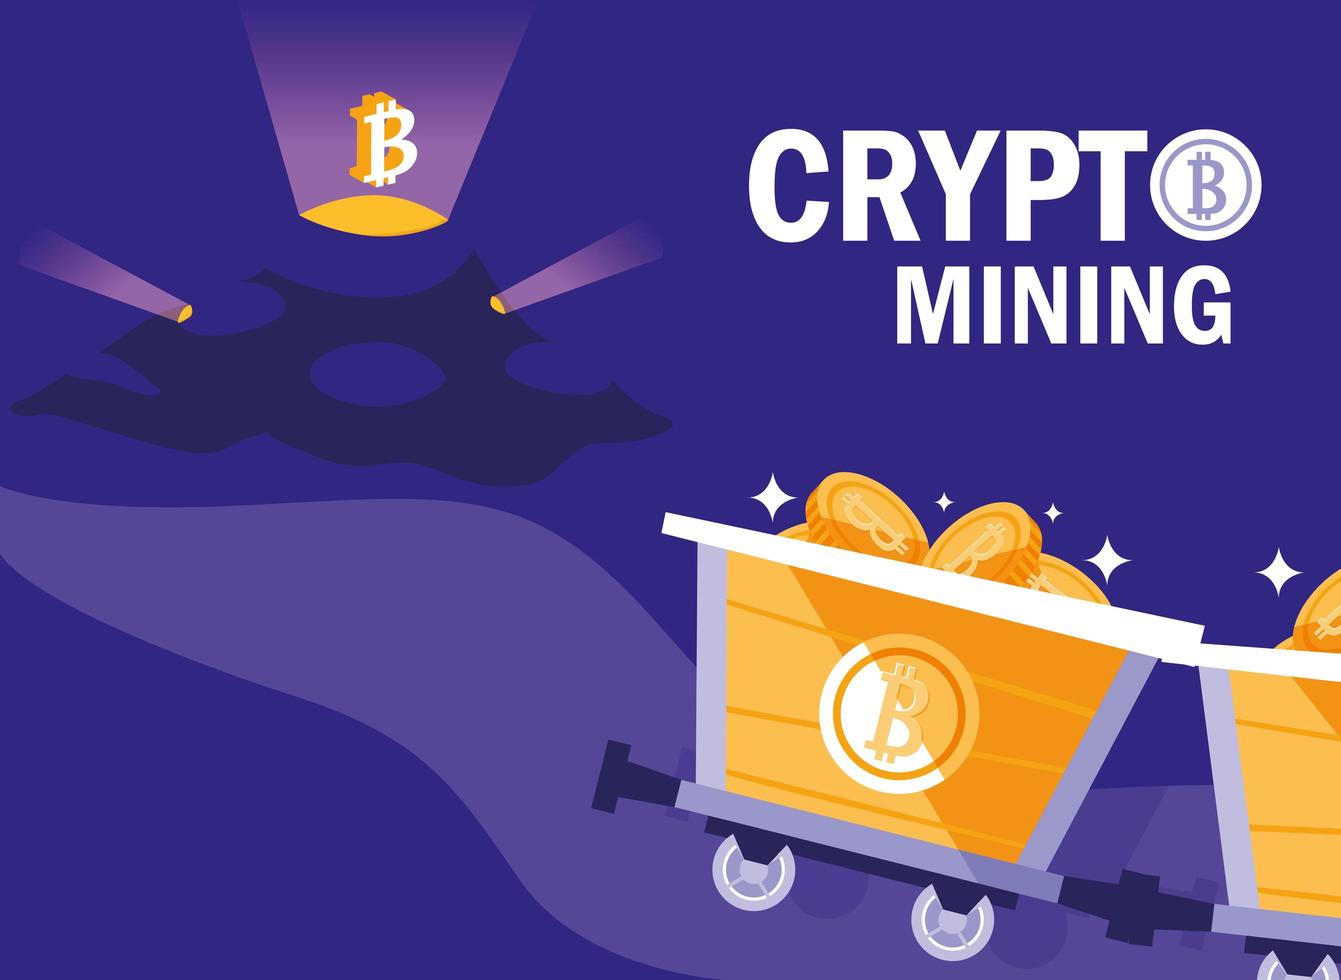 crypto mining bitcoin pictogrammen vector